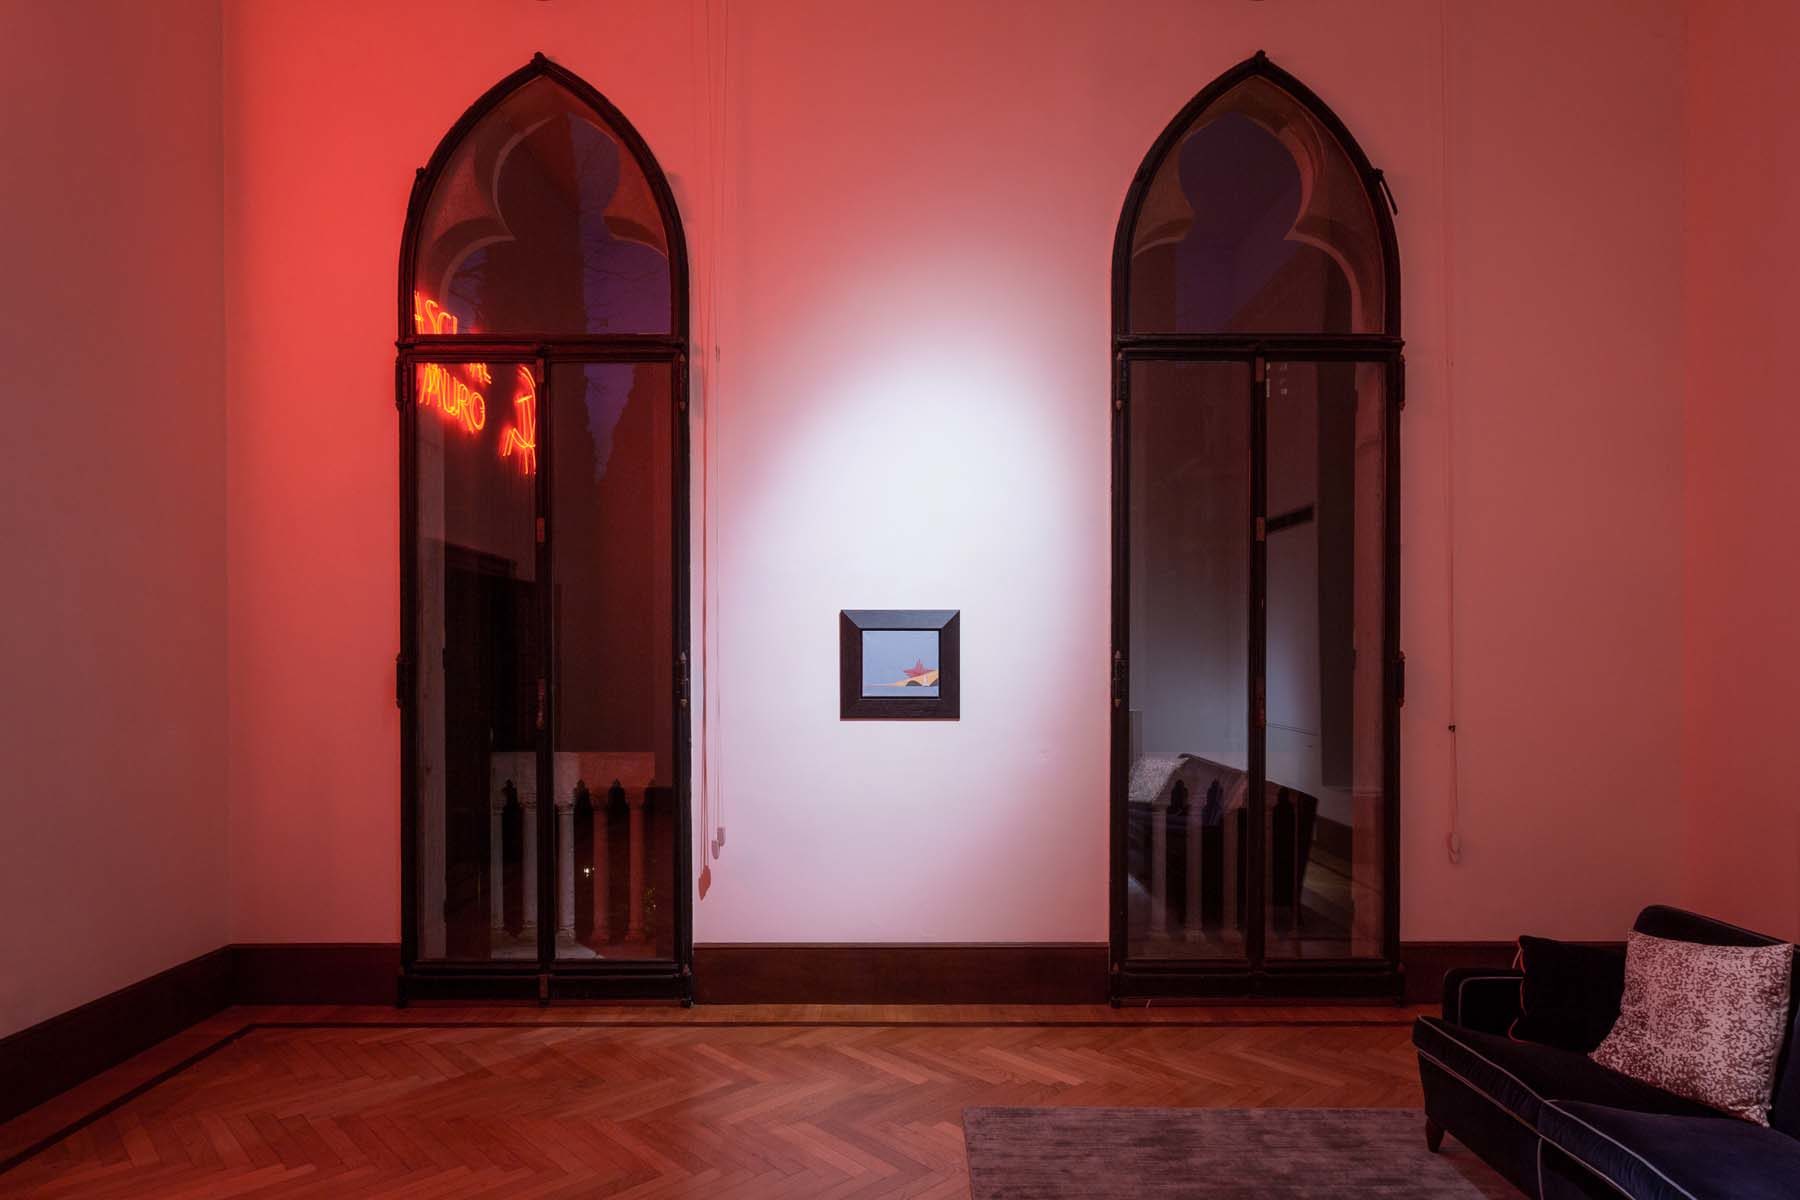 Linea di principio, 2018, installation view, Fondazione Berengo, Venezia, ph. Nico Covre